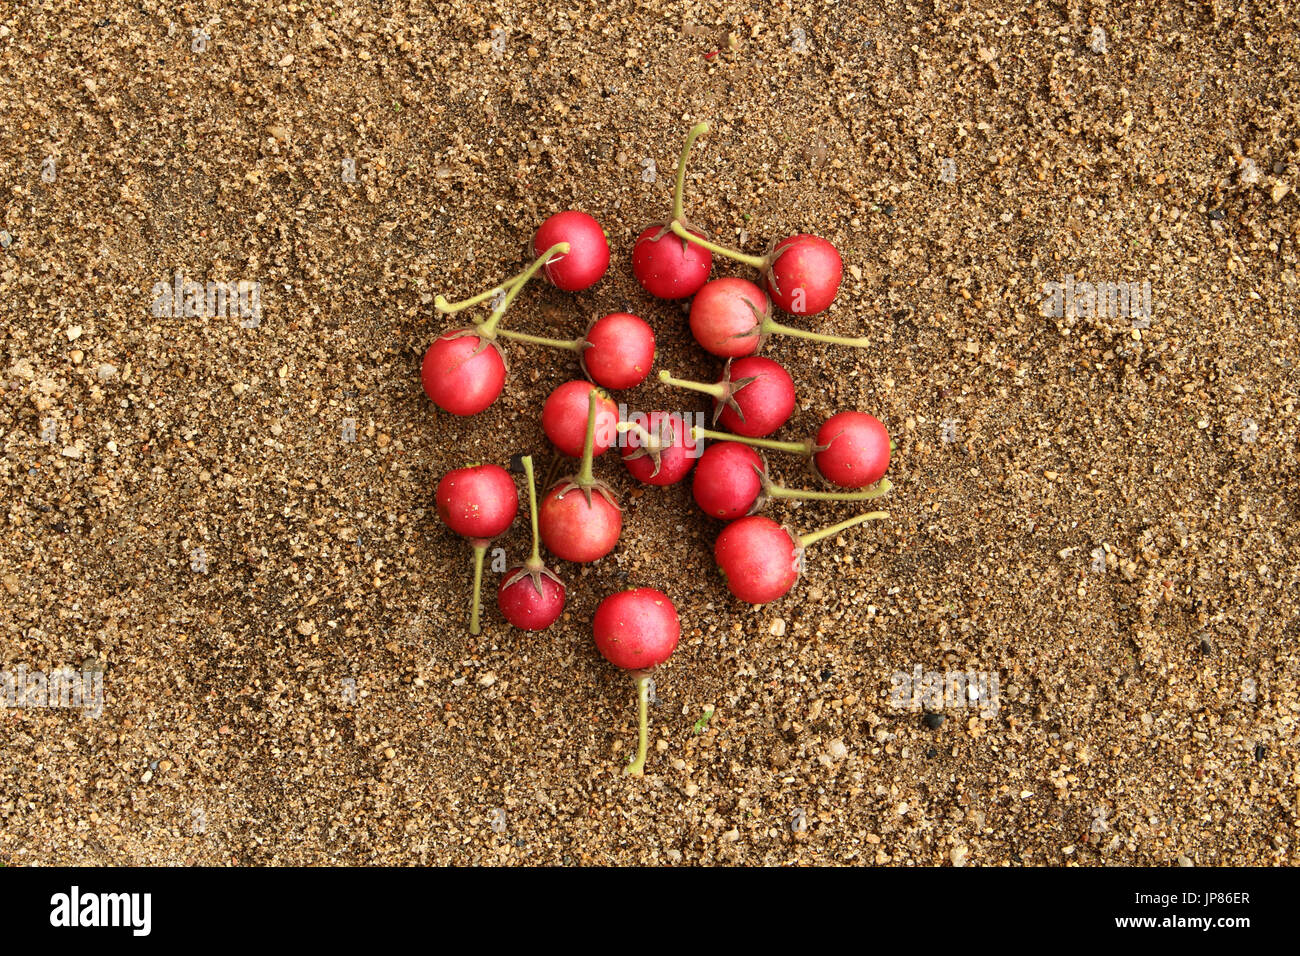 Flacourtia fruit on sand Stock Photo